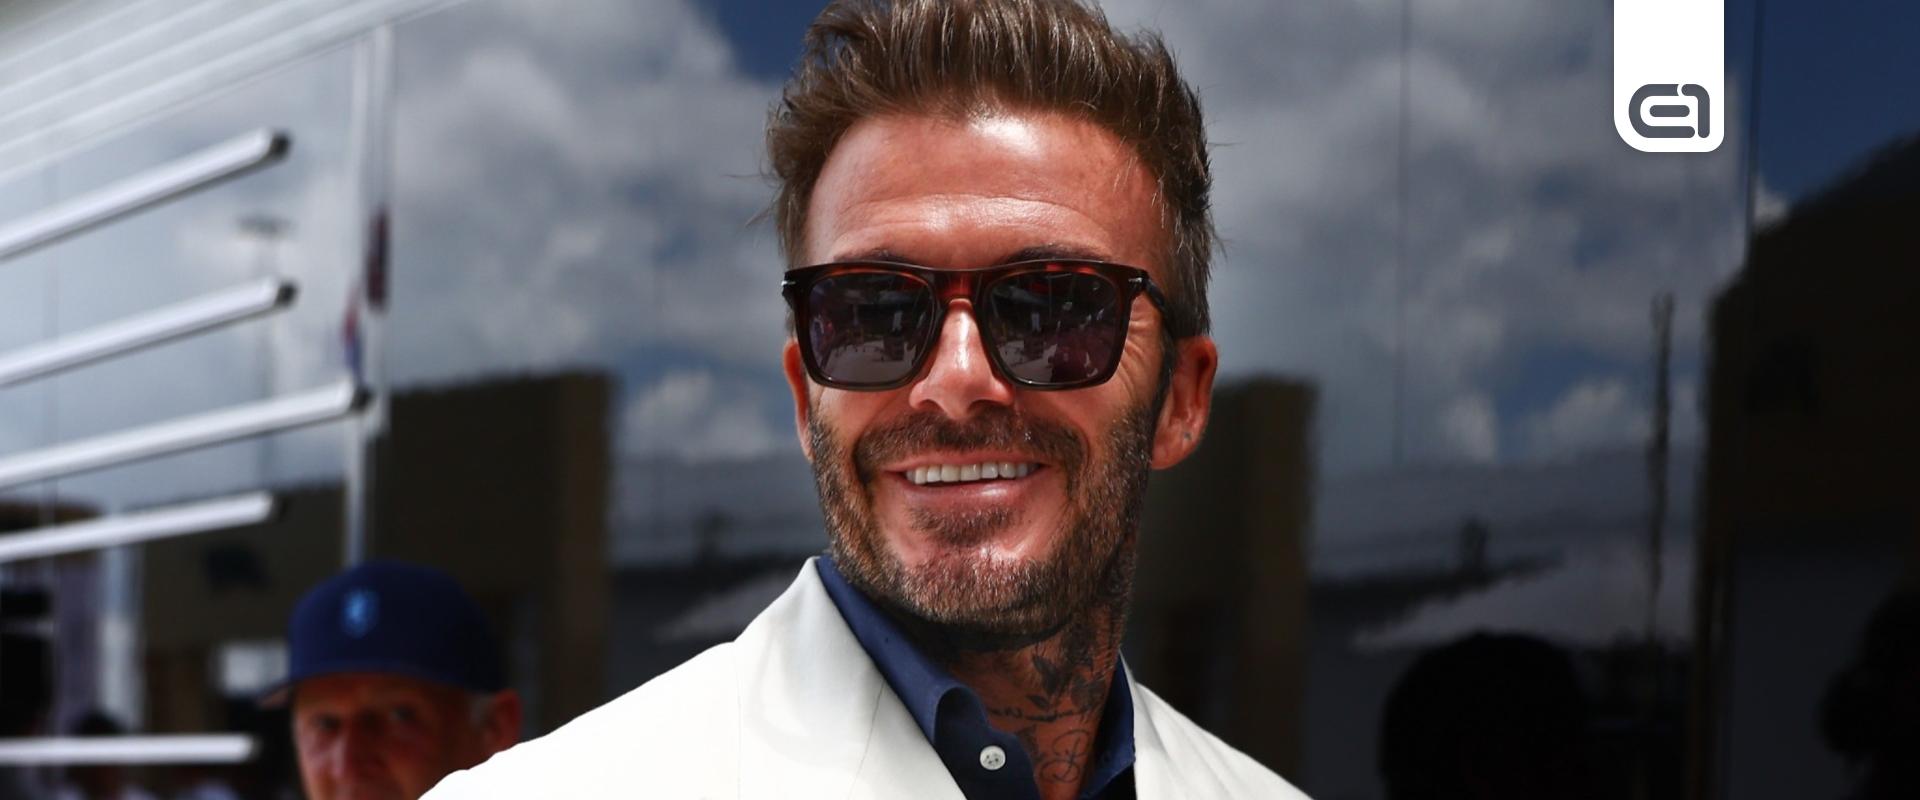 Példaképünk, Beckham - Interjú David Beckhammel